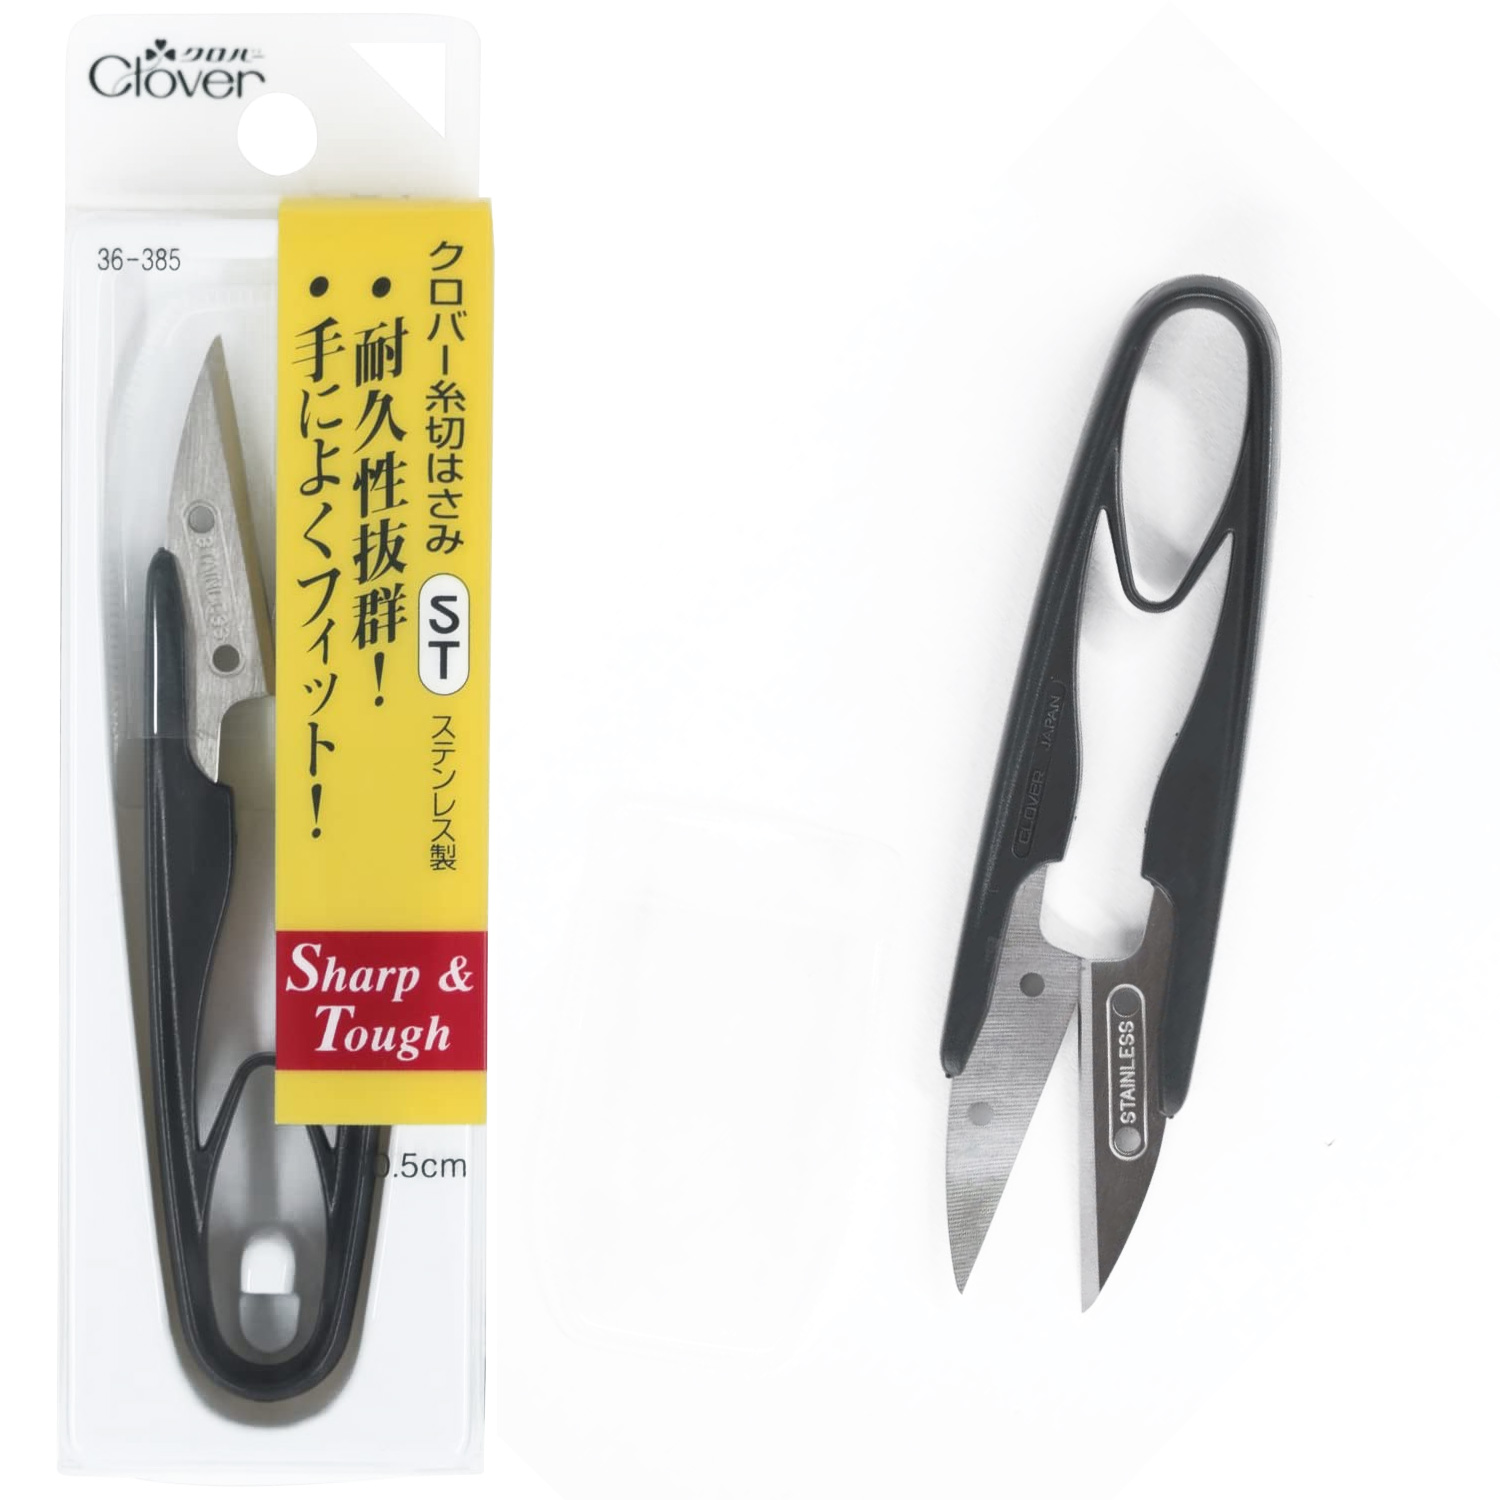 CL36-385 Clover Thread Scissor ST , length 10.5cm (pcs)